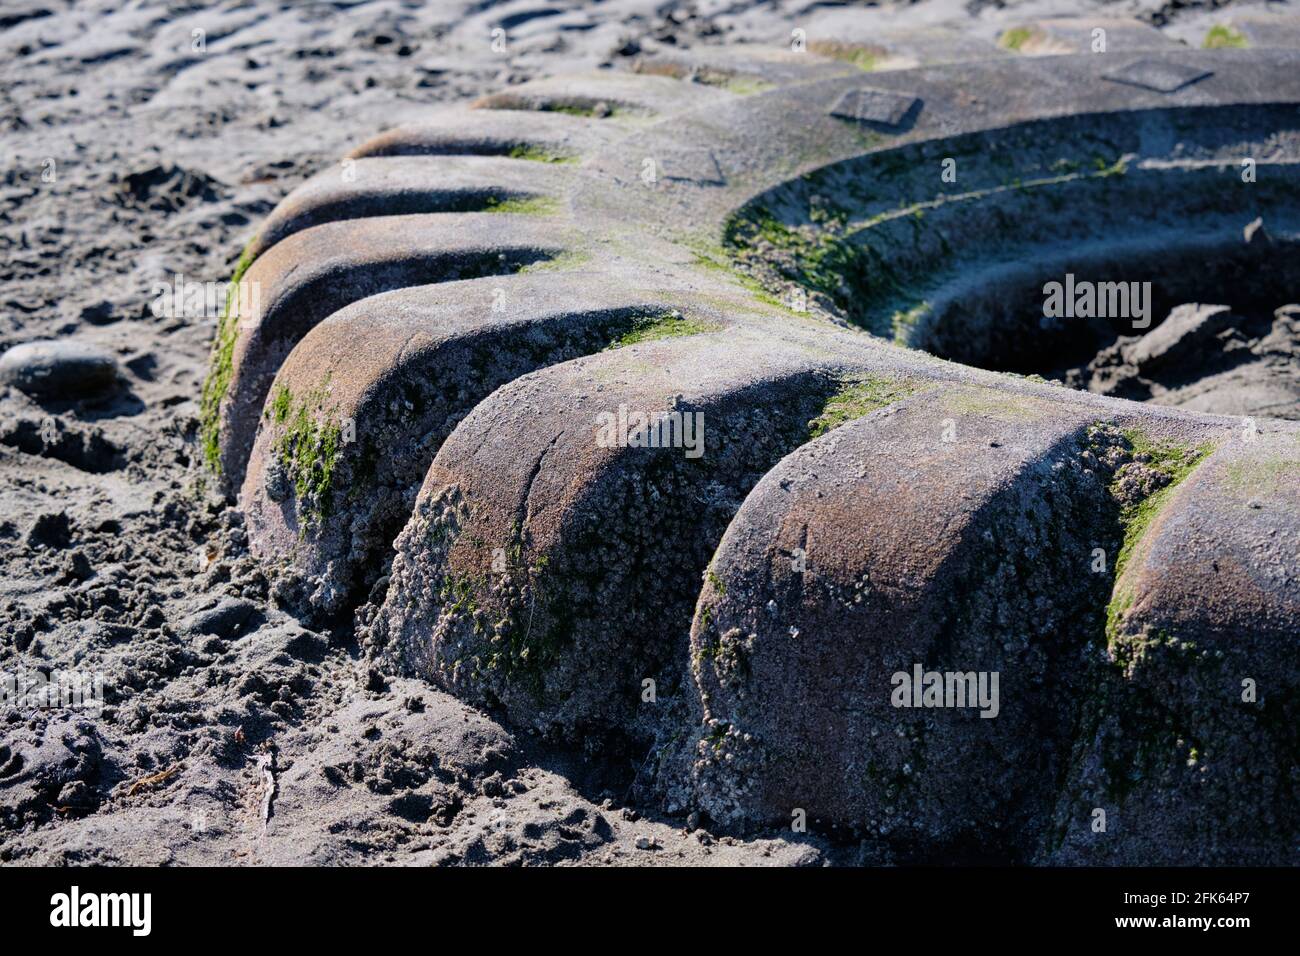 Les vieux pneus exposés à marée basse deviennent lentement la maison de diverses plantes et animaux d'eau salée. Banque D'Images